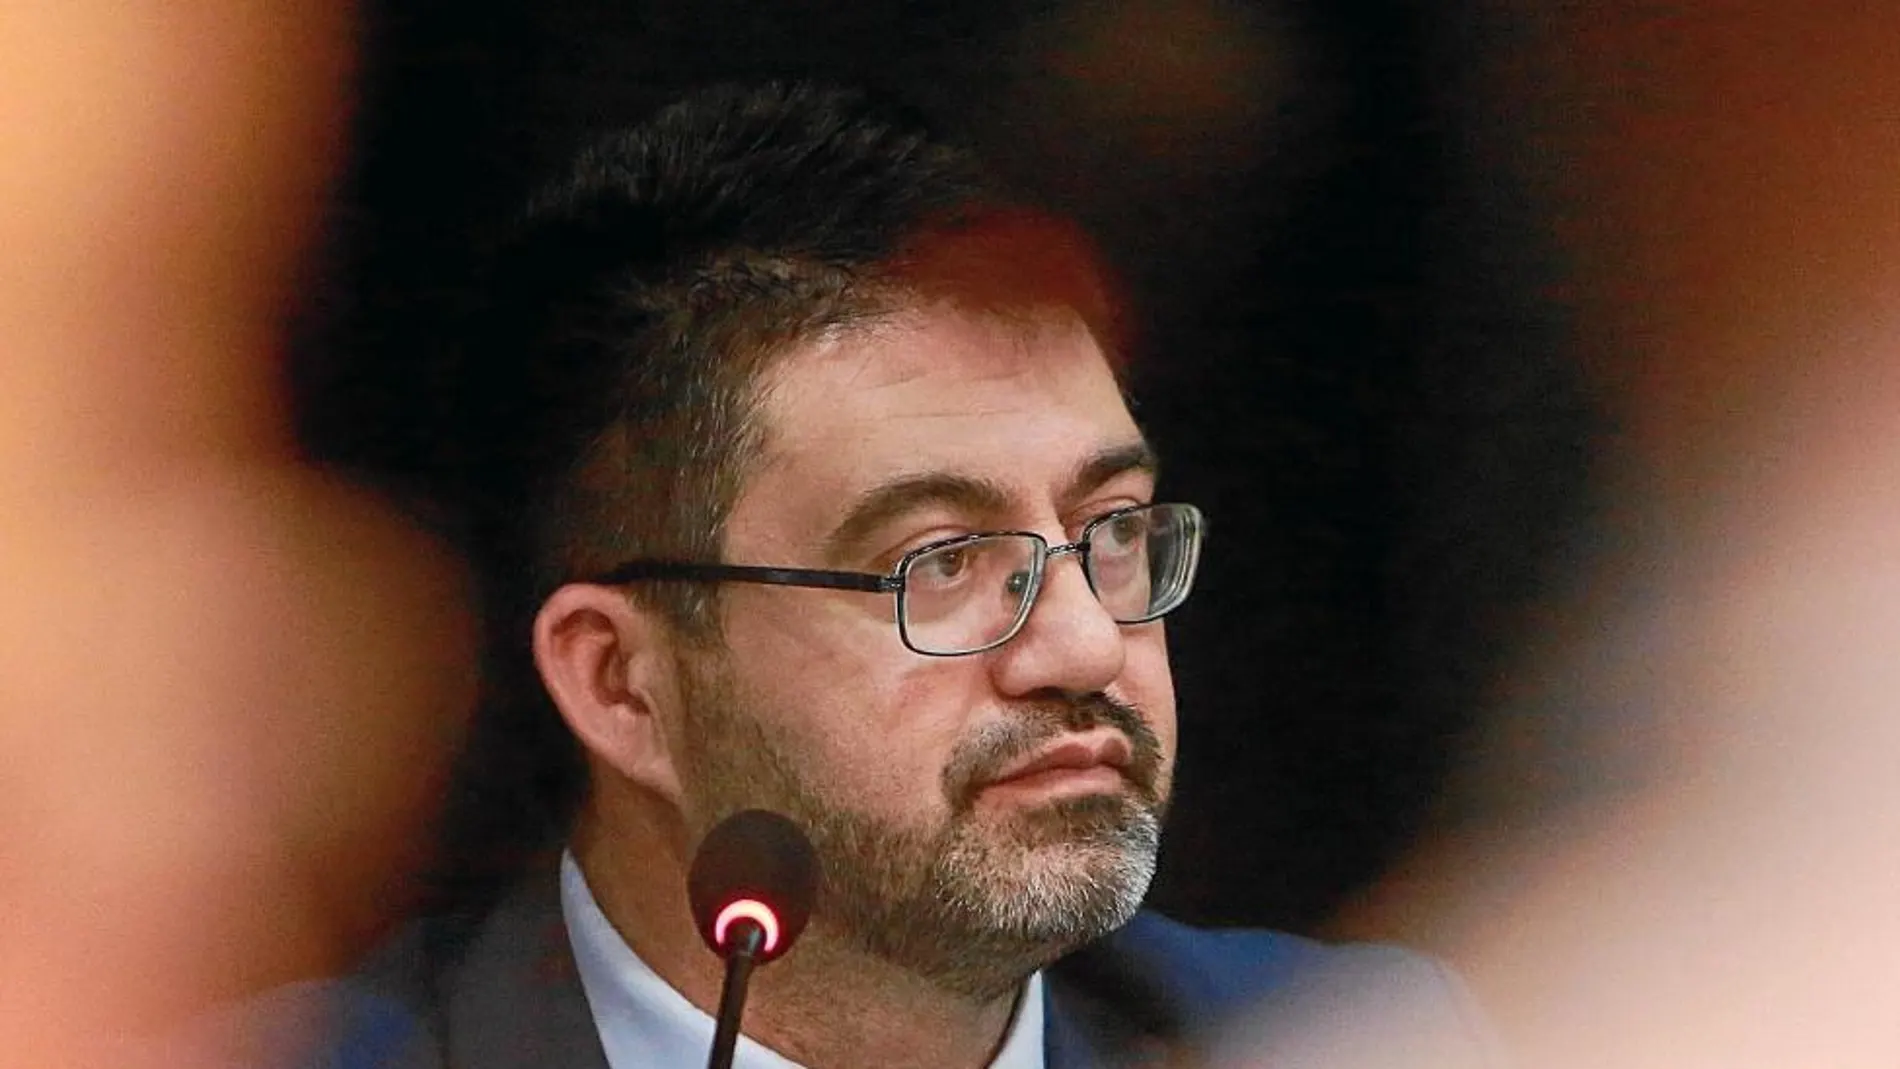 El concejal de Izquierda Unida Carlos Sánchez Mato